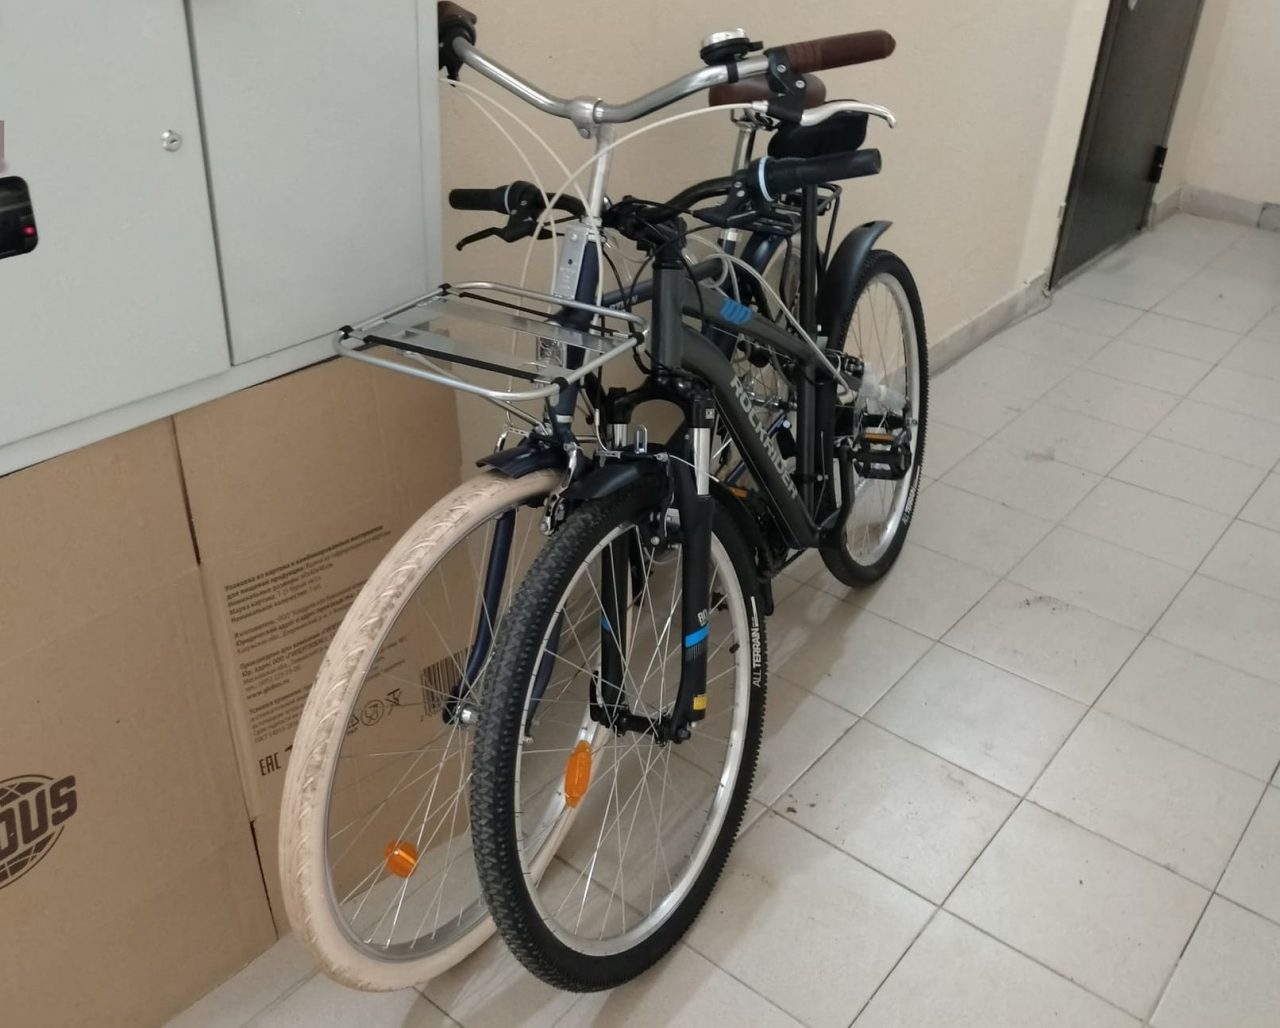 «Побухали на два срока»: в ЕАО осудили приятелей за кражу велосипедов